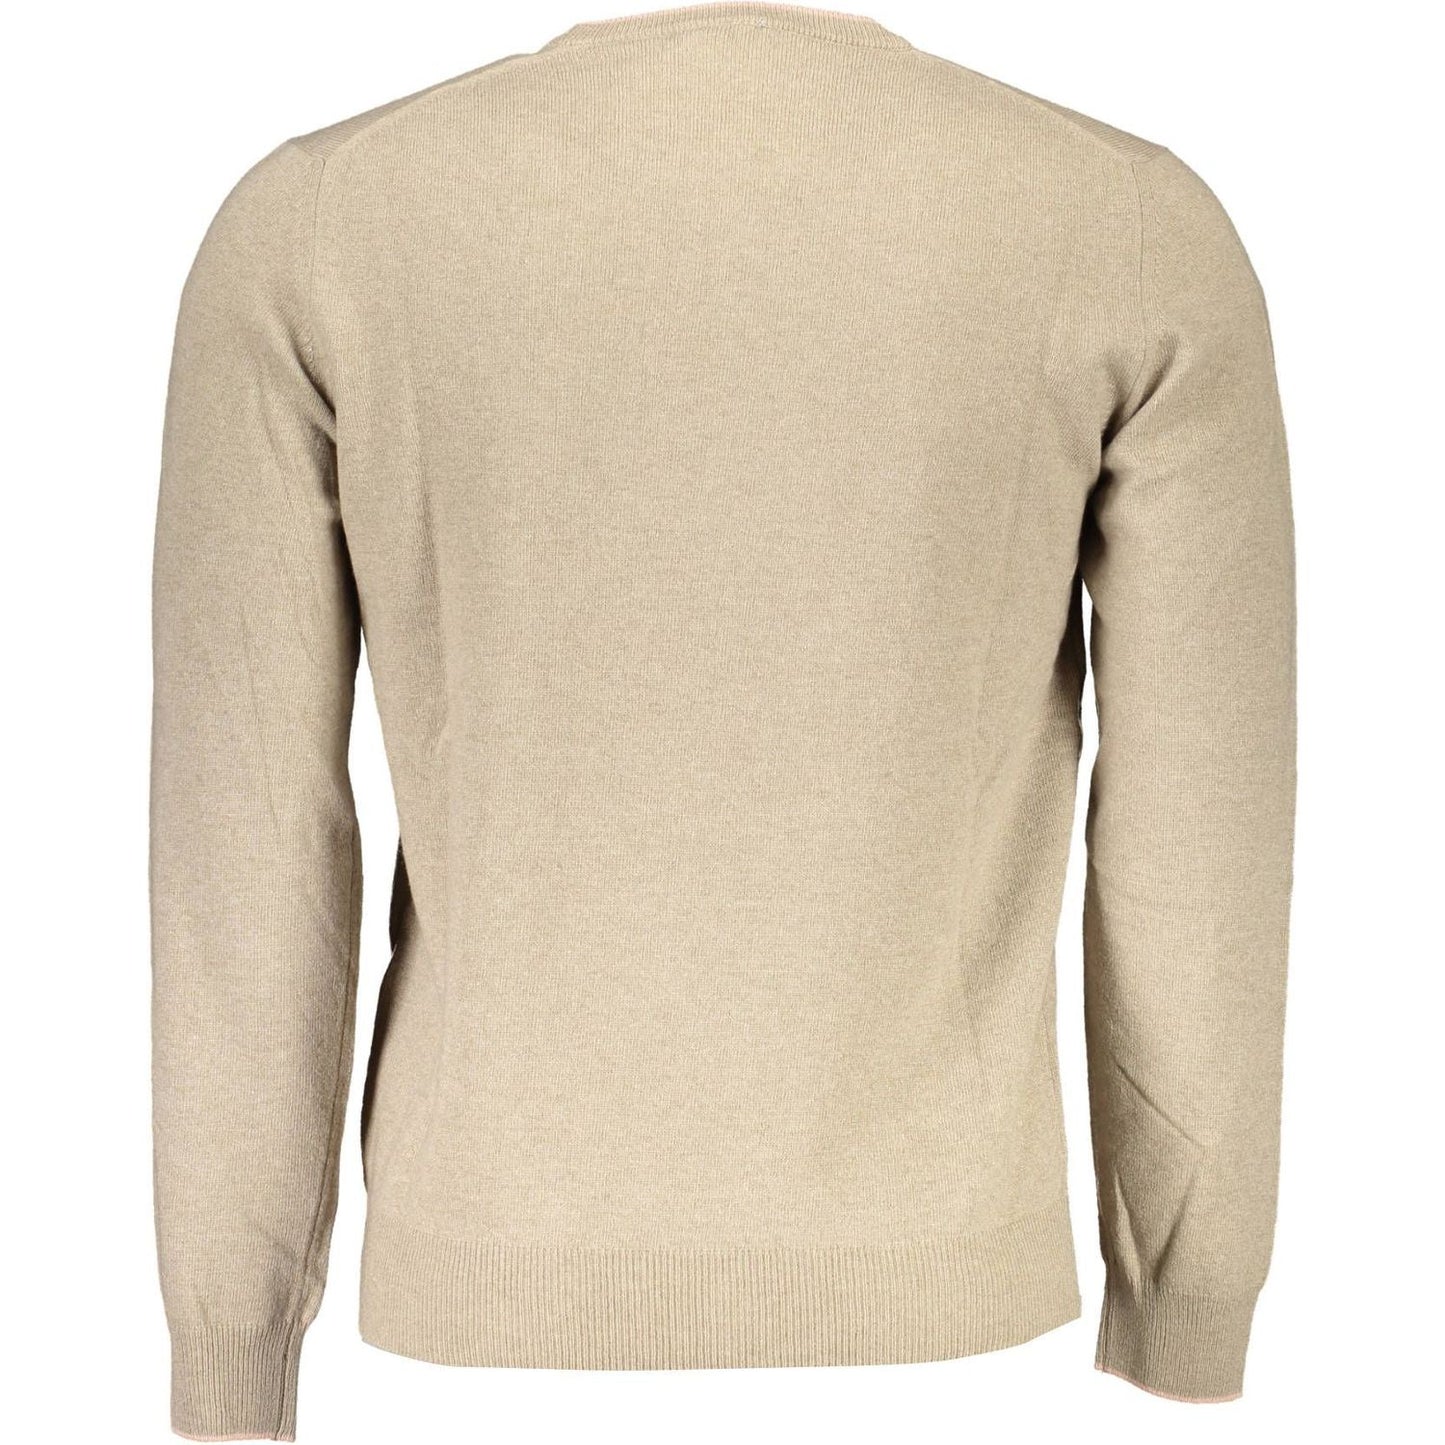 Harmont & Blaine Elegant Beige Crew Neck Sweater with Embroidery elegant-beige-crew-neck-sweater-with-embroidery-1